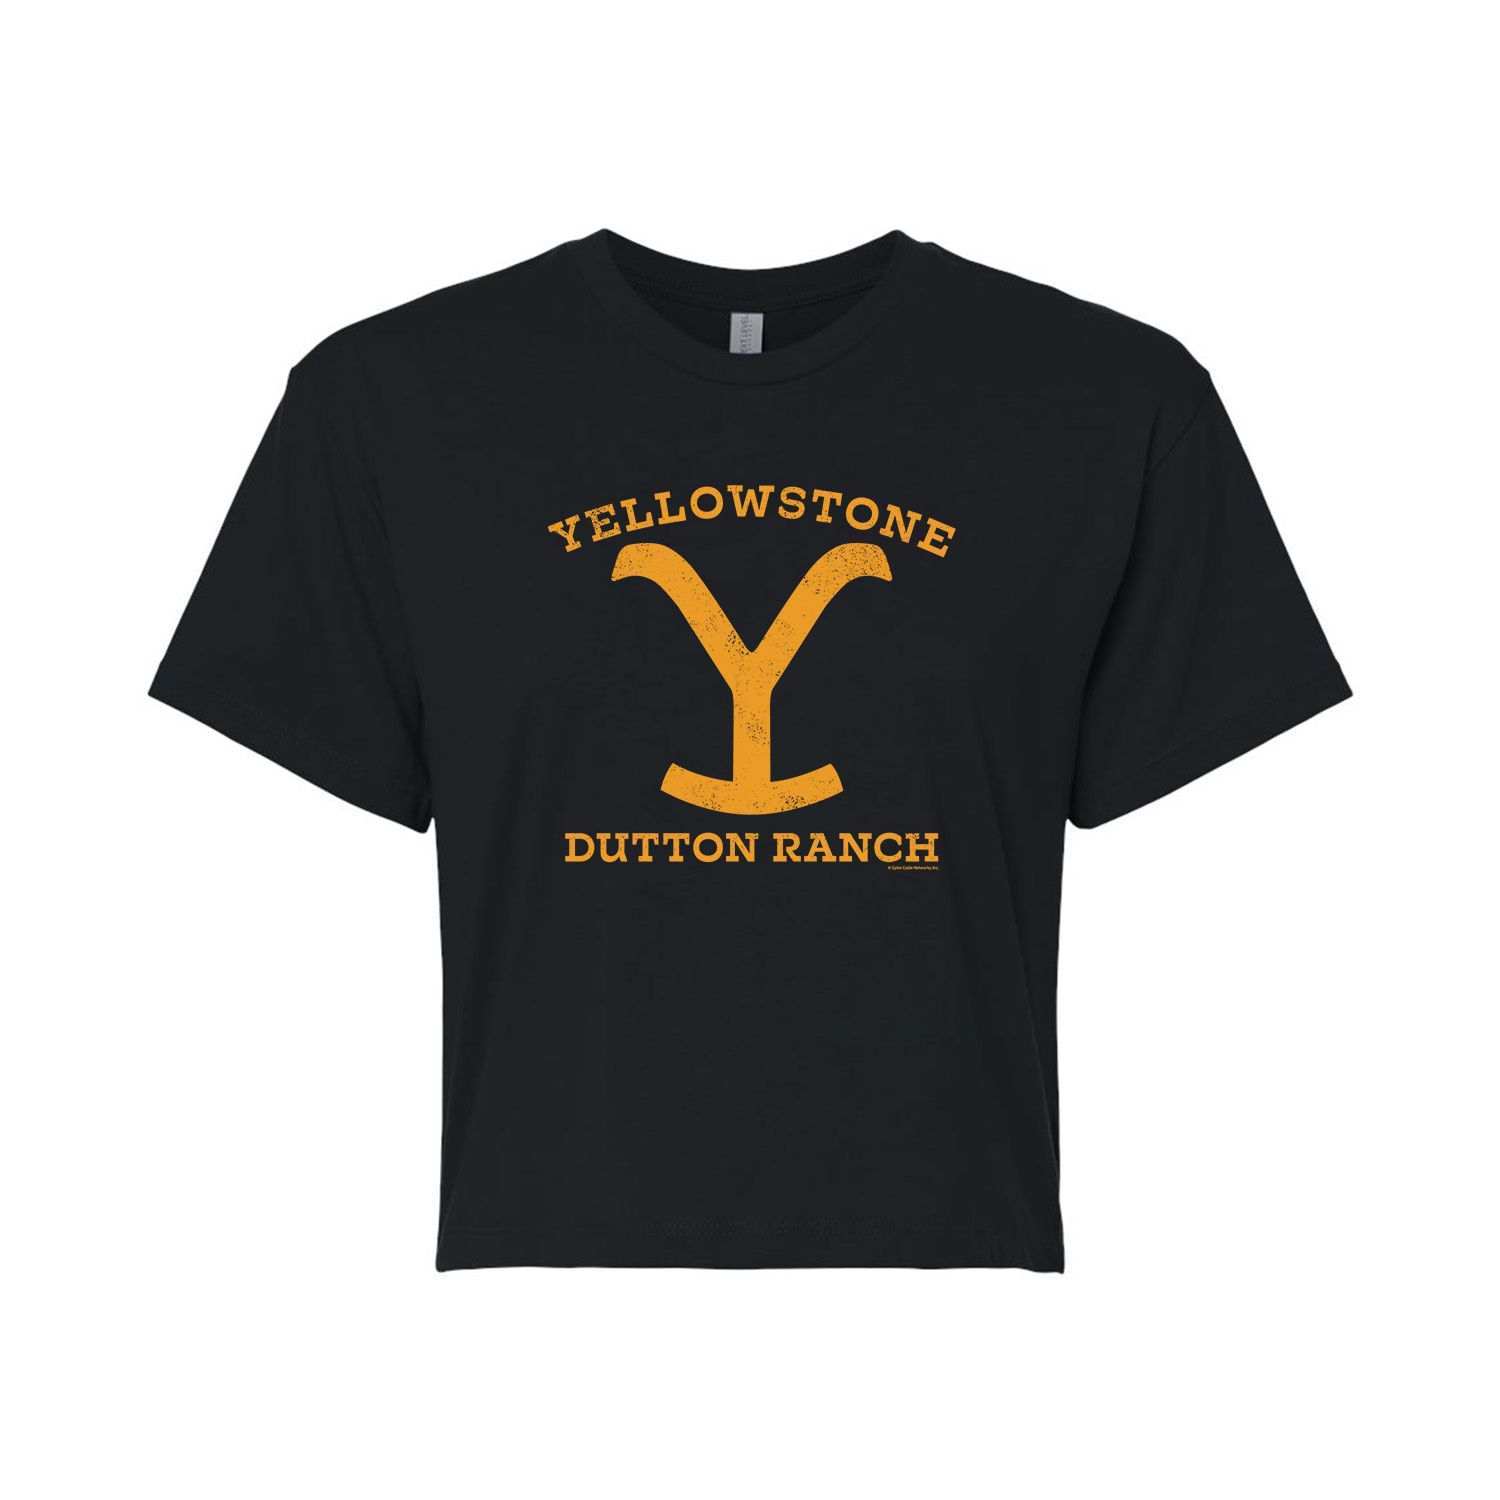 Укороченная футболка желтого цвета Dutton Ranch для юниоров желтого цвета Y Licensed Character флейта из стекловолокна для серфинга желтого цвета